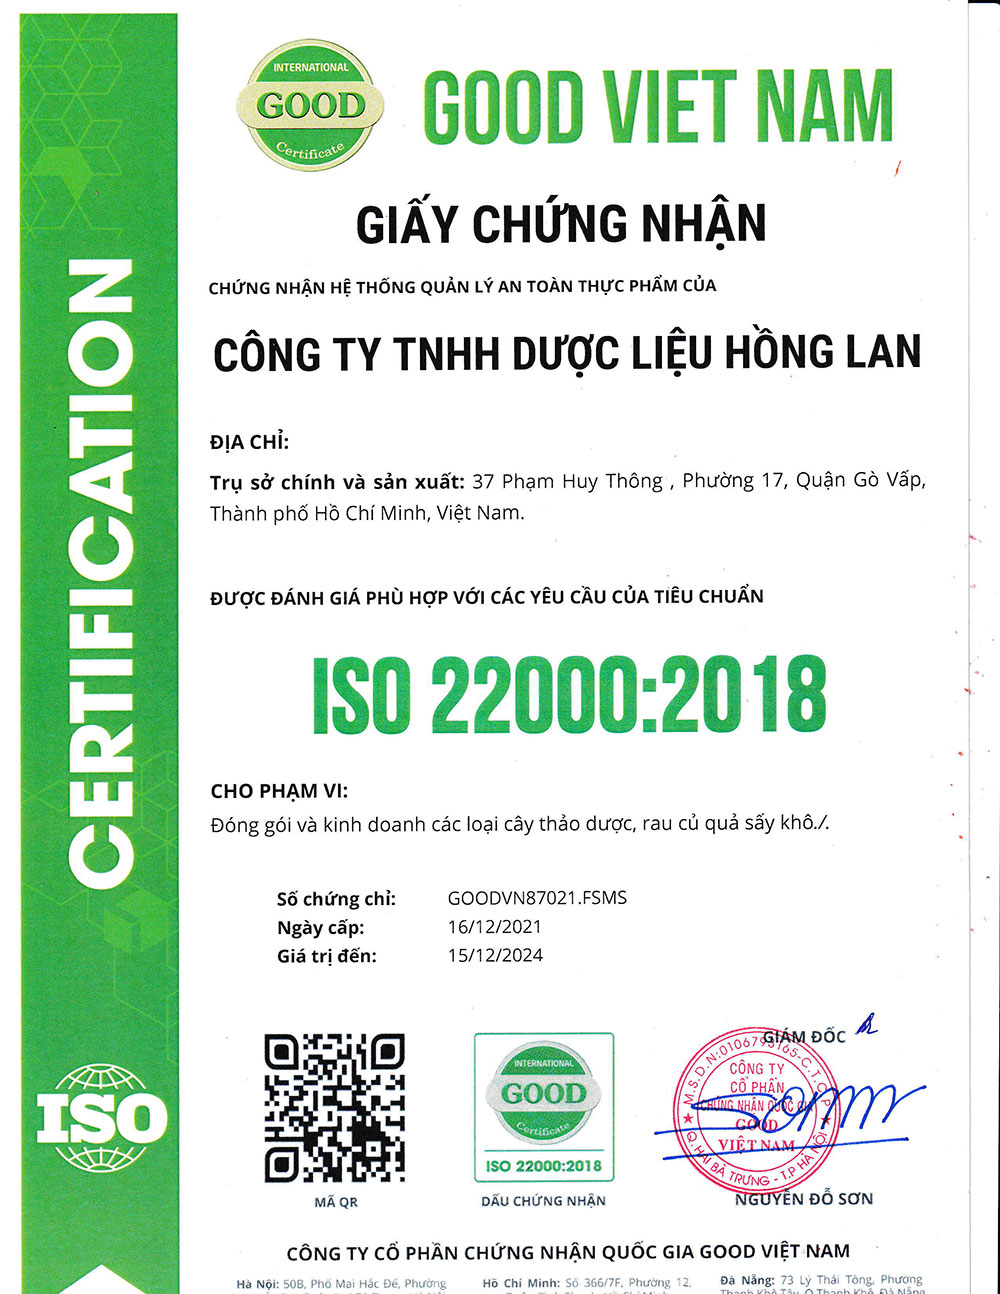 Trà Thù Lù dạng túi lọc được sản xuất theo hệ thống quản lý an toàn thực phẩm ISO 22000:2018 được cấp bởi công ty cổ phần chứng nhận Quốc Gia Good Việt Nam (Good Viet Nam Certification Joint Stock Company)